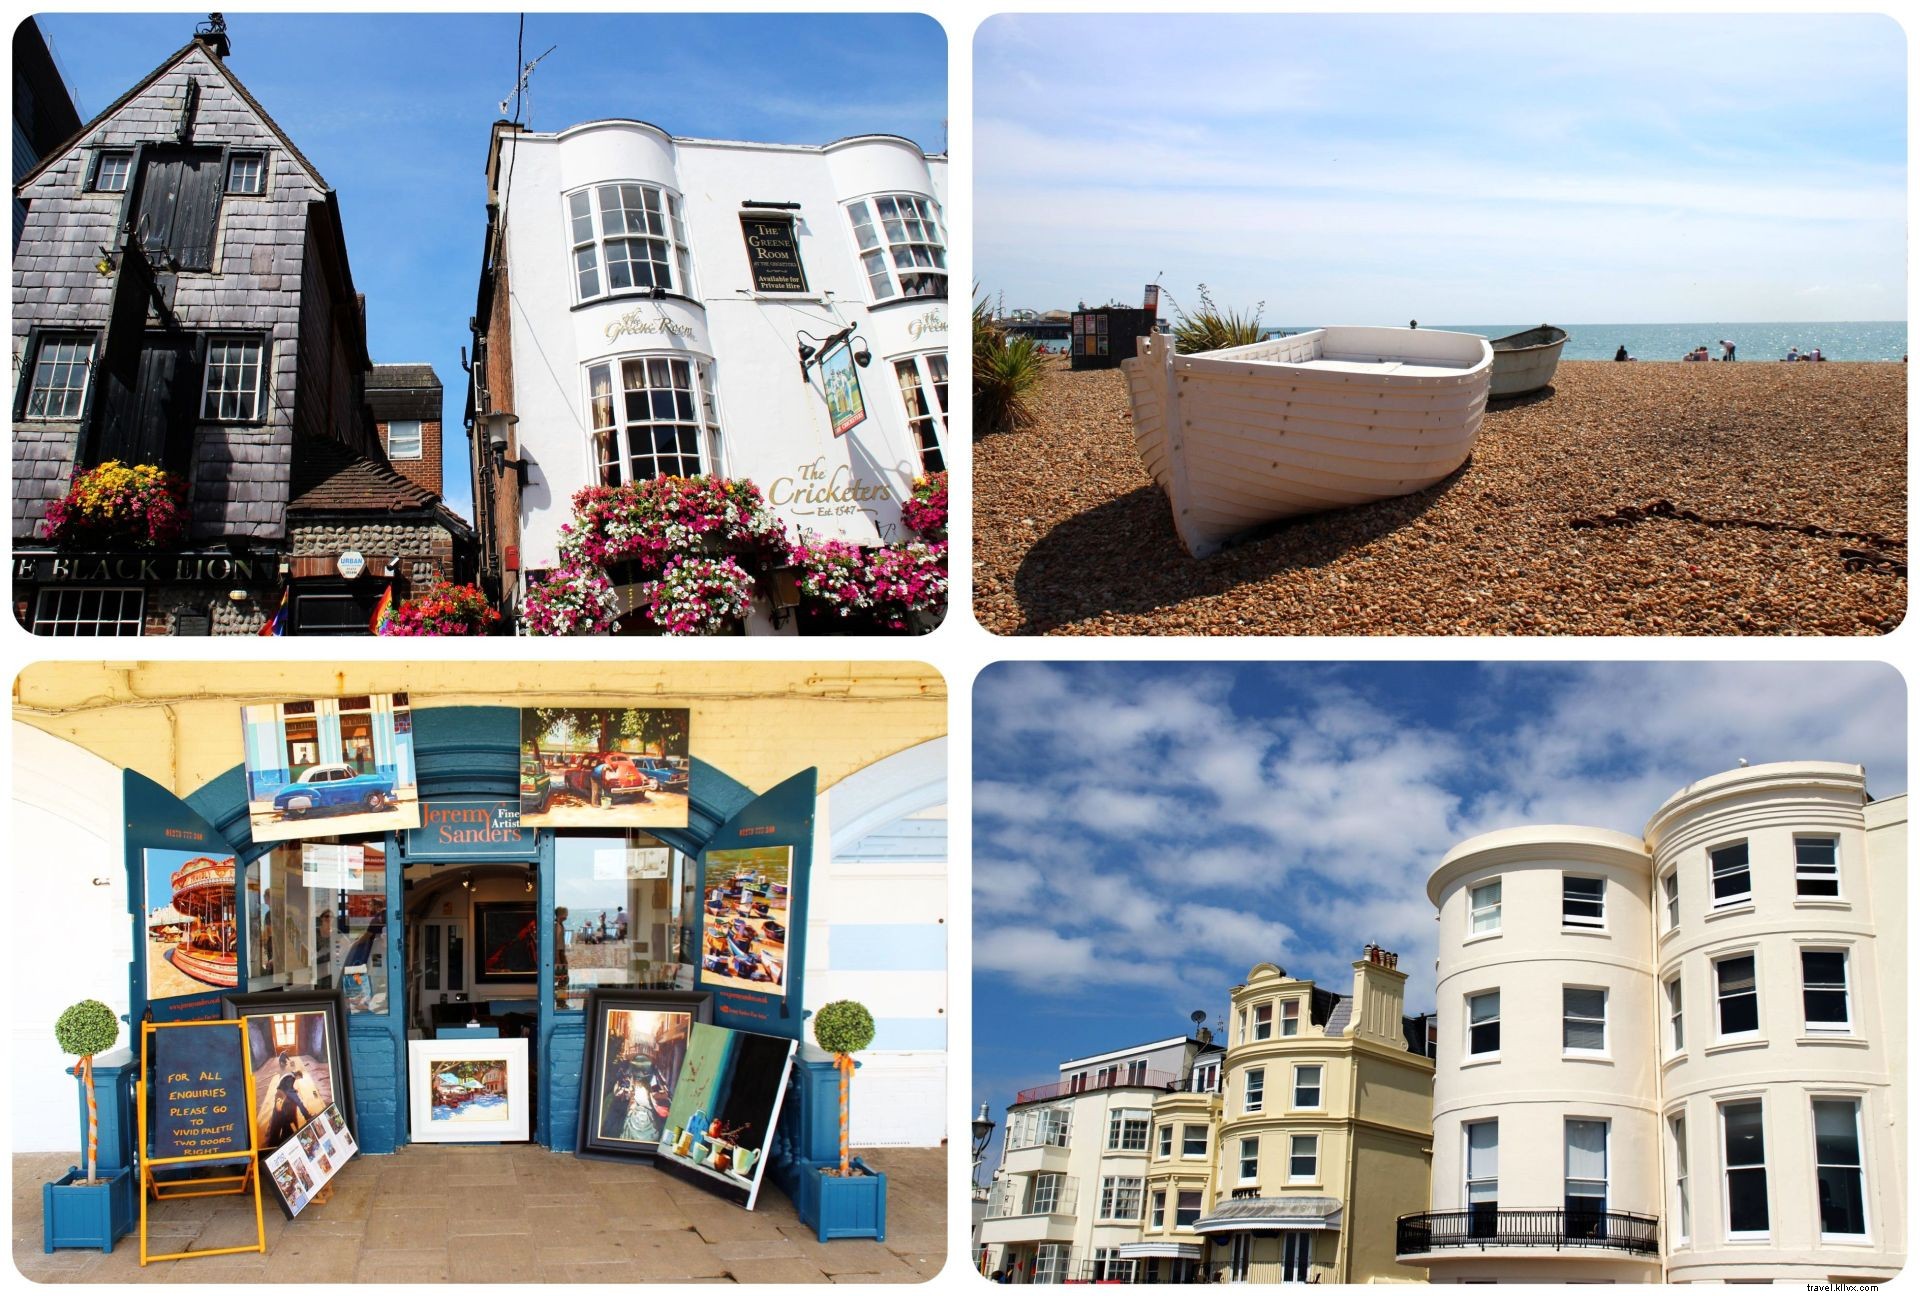 Visite Brighton:¿Qué hace que Brighton sea tan atractivo?